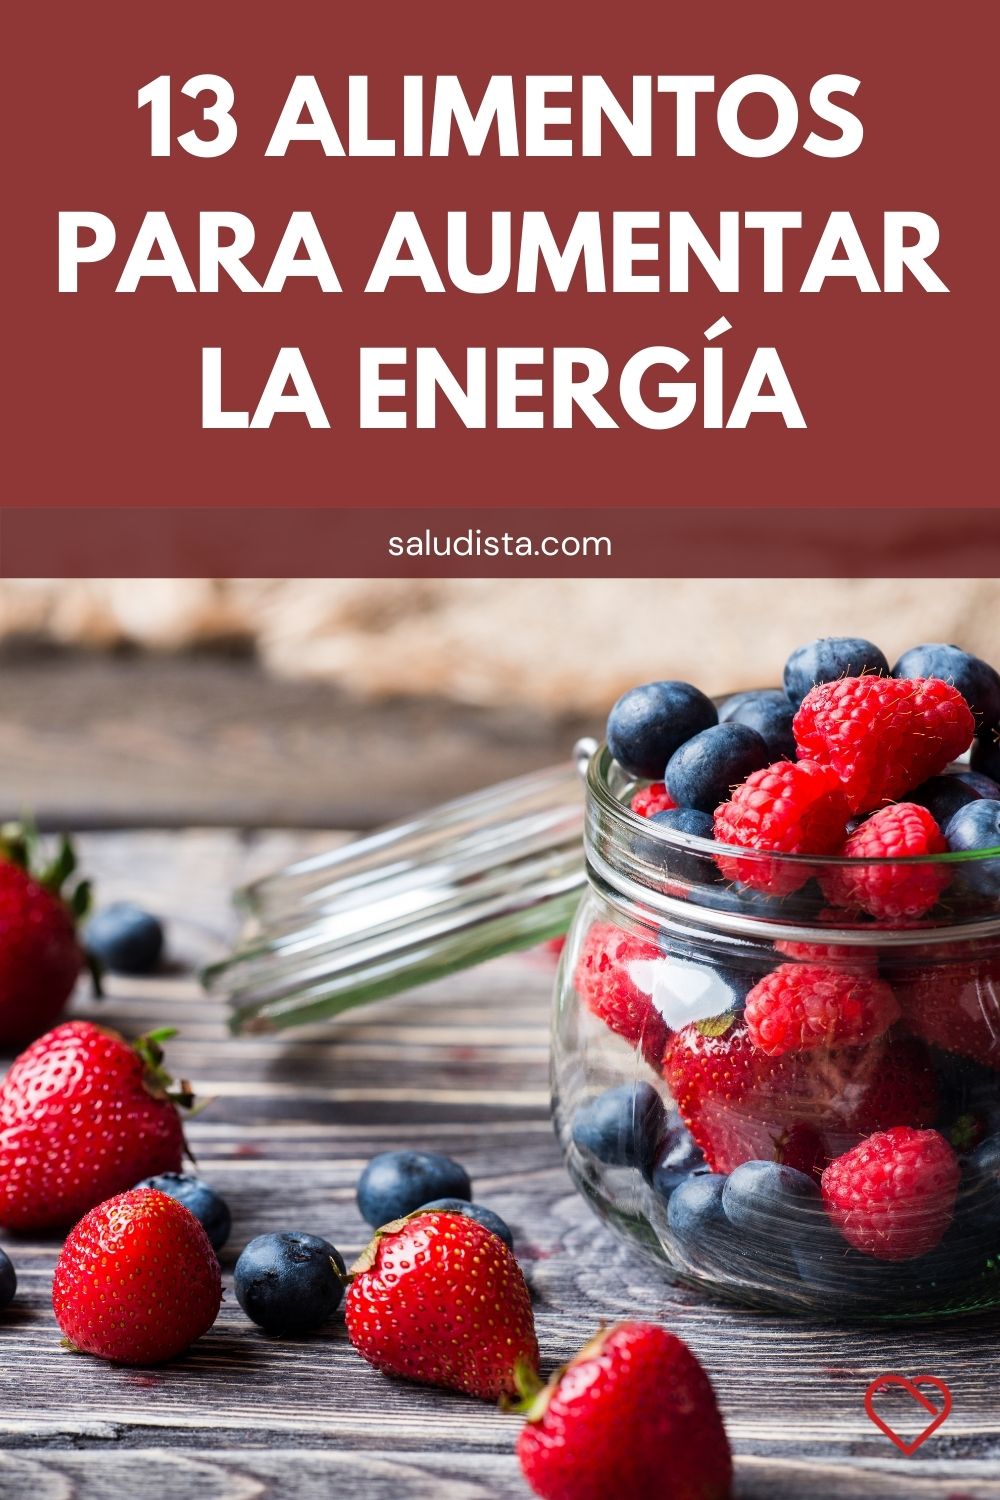 13 Alimentos para aumentar la energía